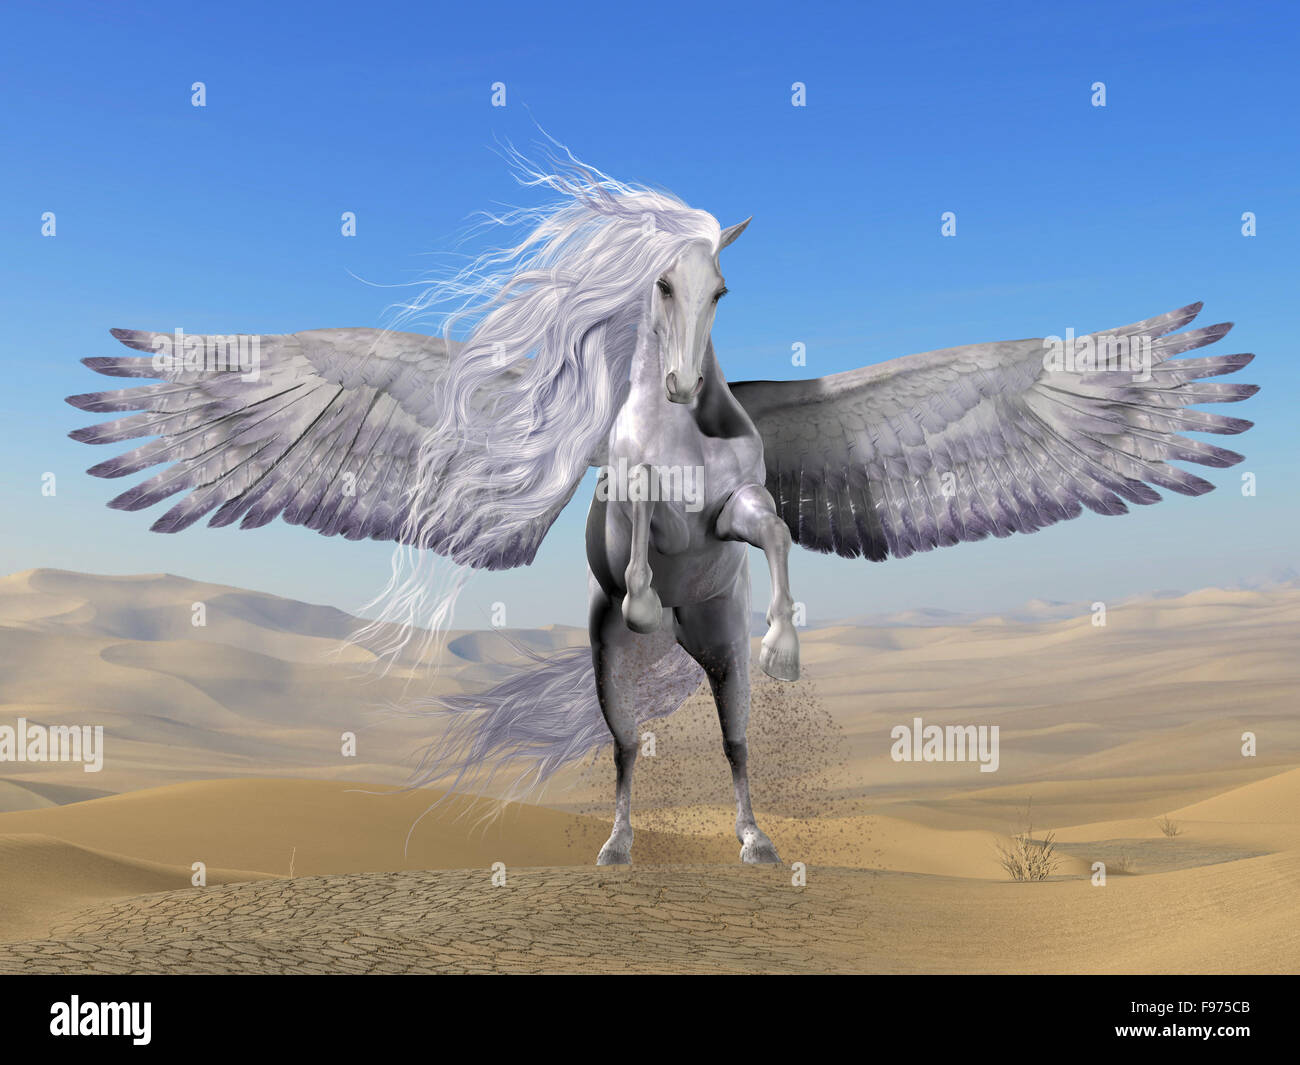 Pegasus es una divina criatura mitológica griega que tiene la forma de un blanco caballo alado. Foto de stock